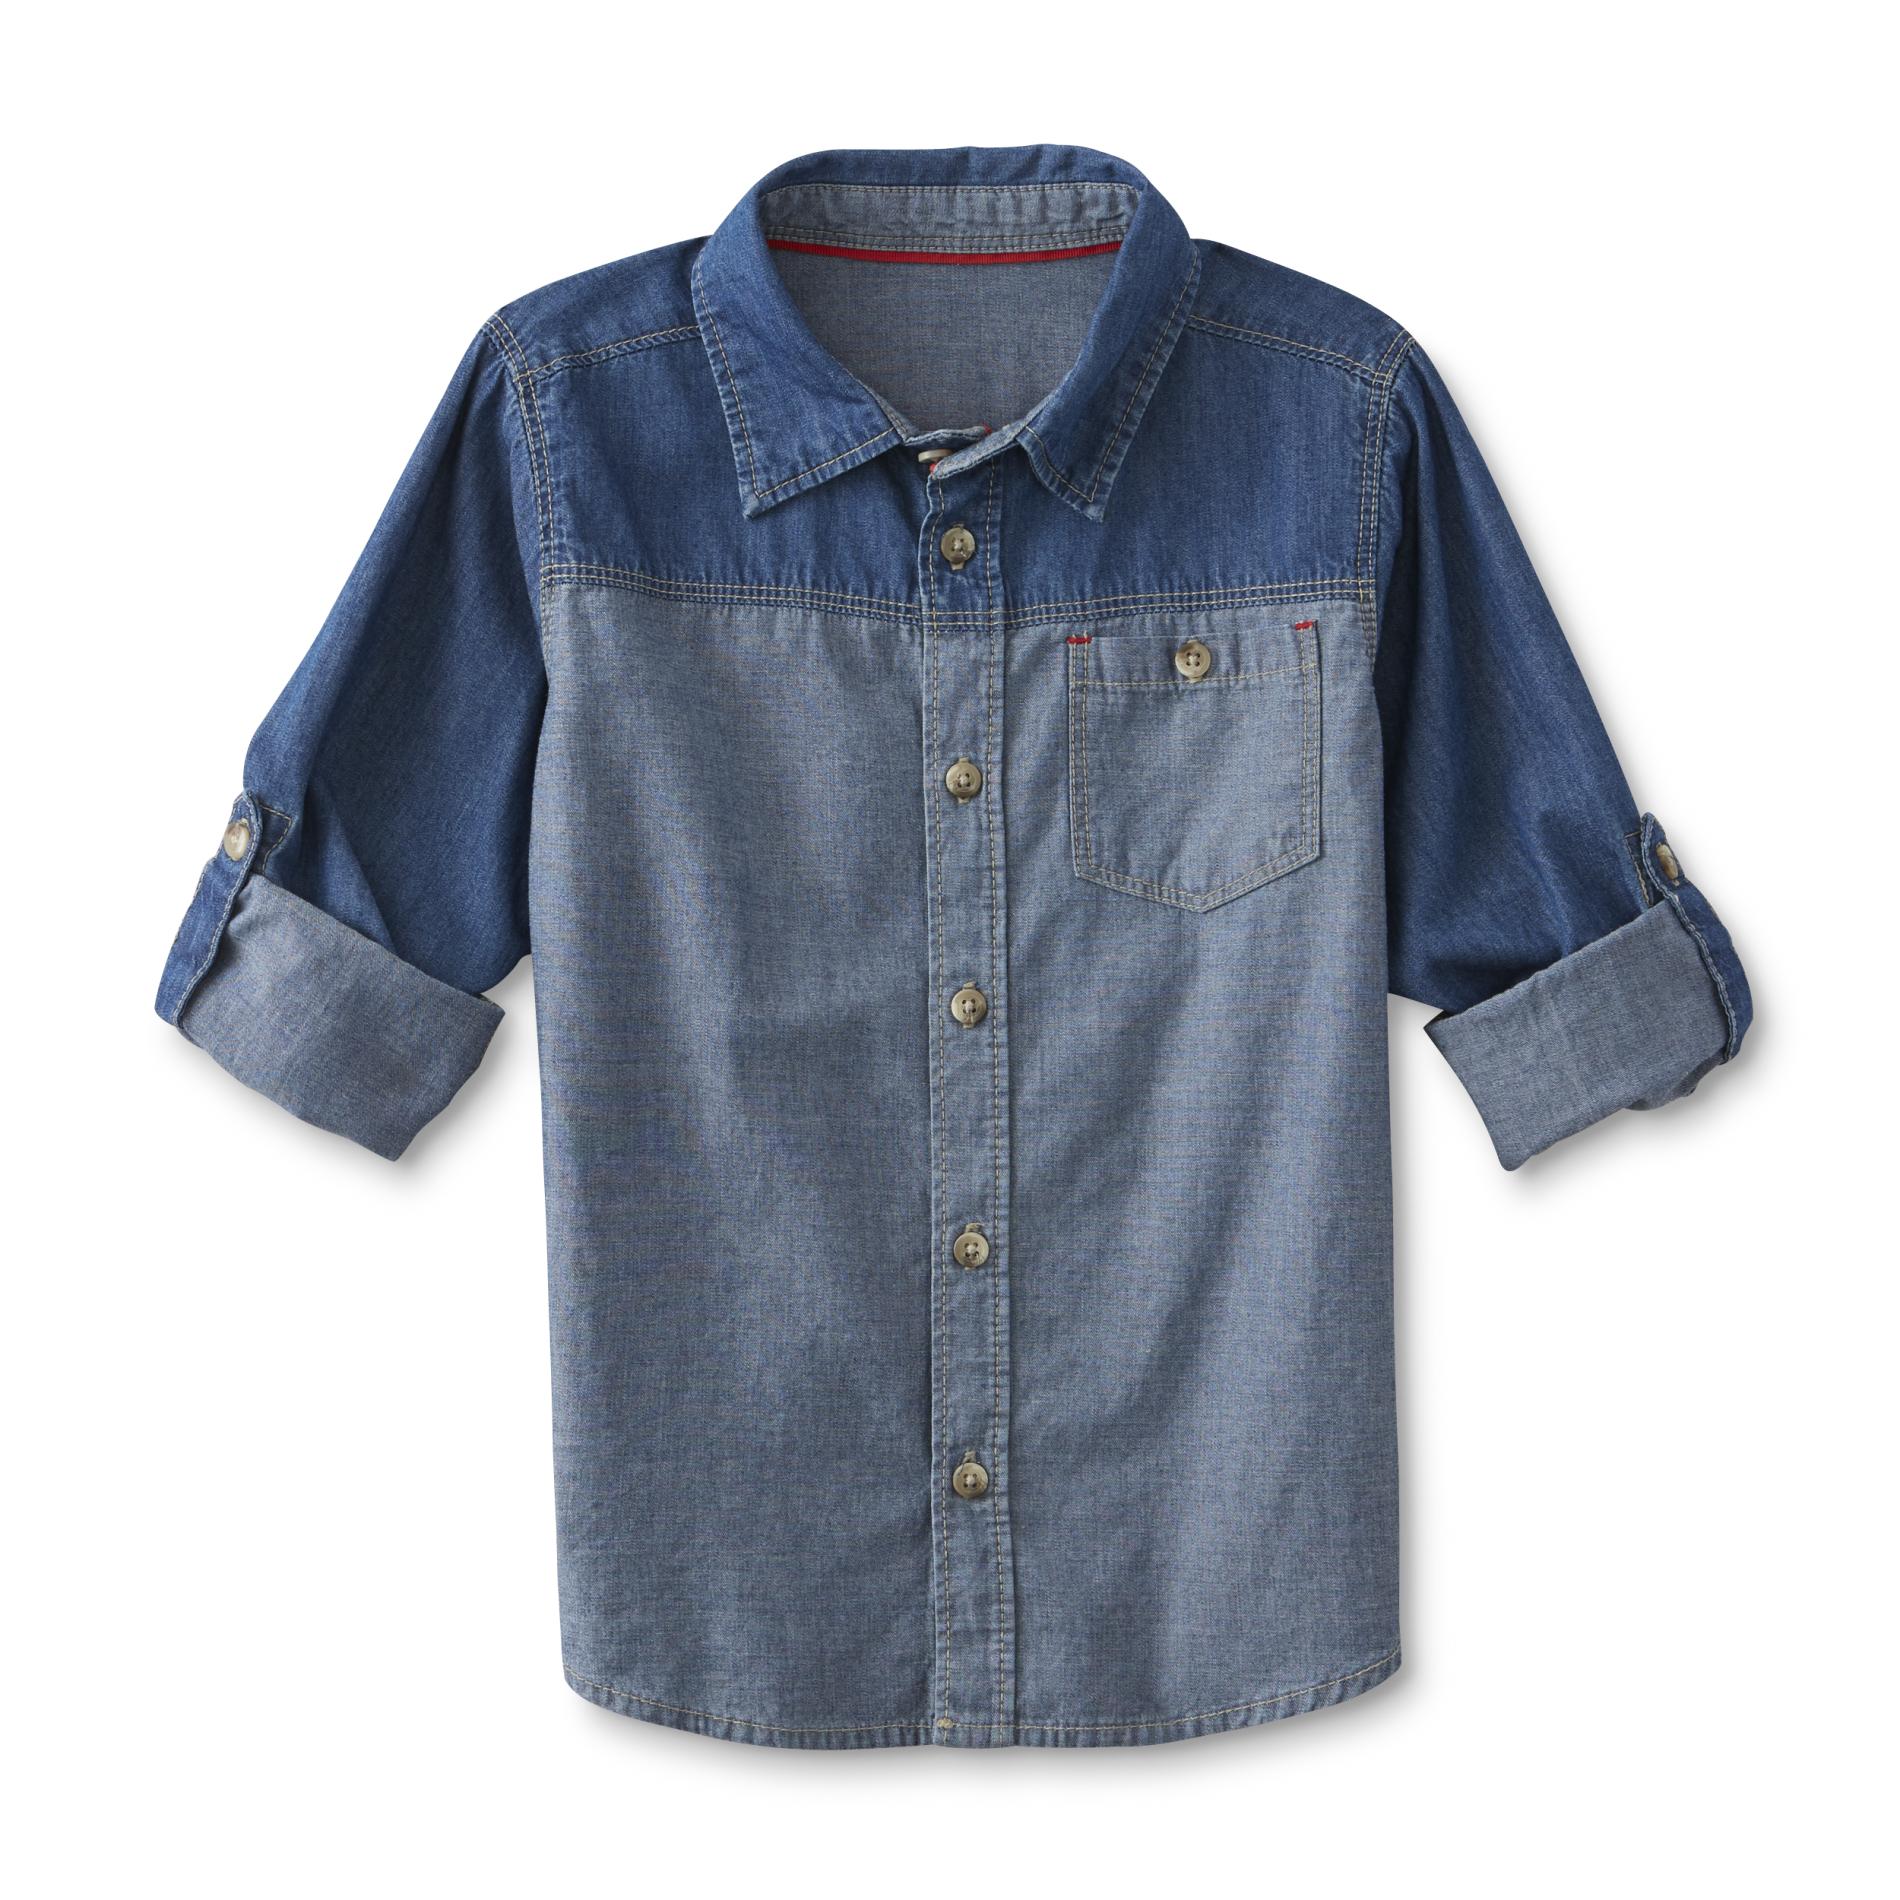 Toughskins Boy's Denim Button-Front Shirt